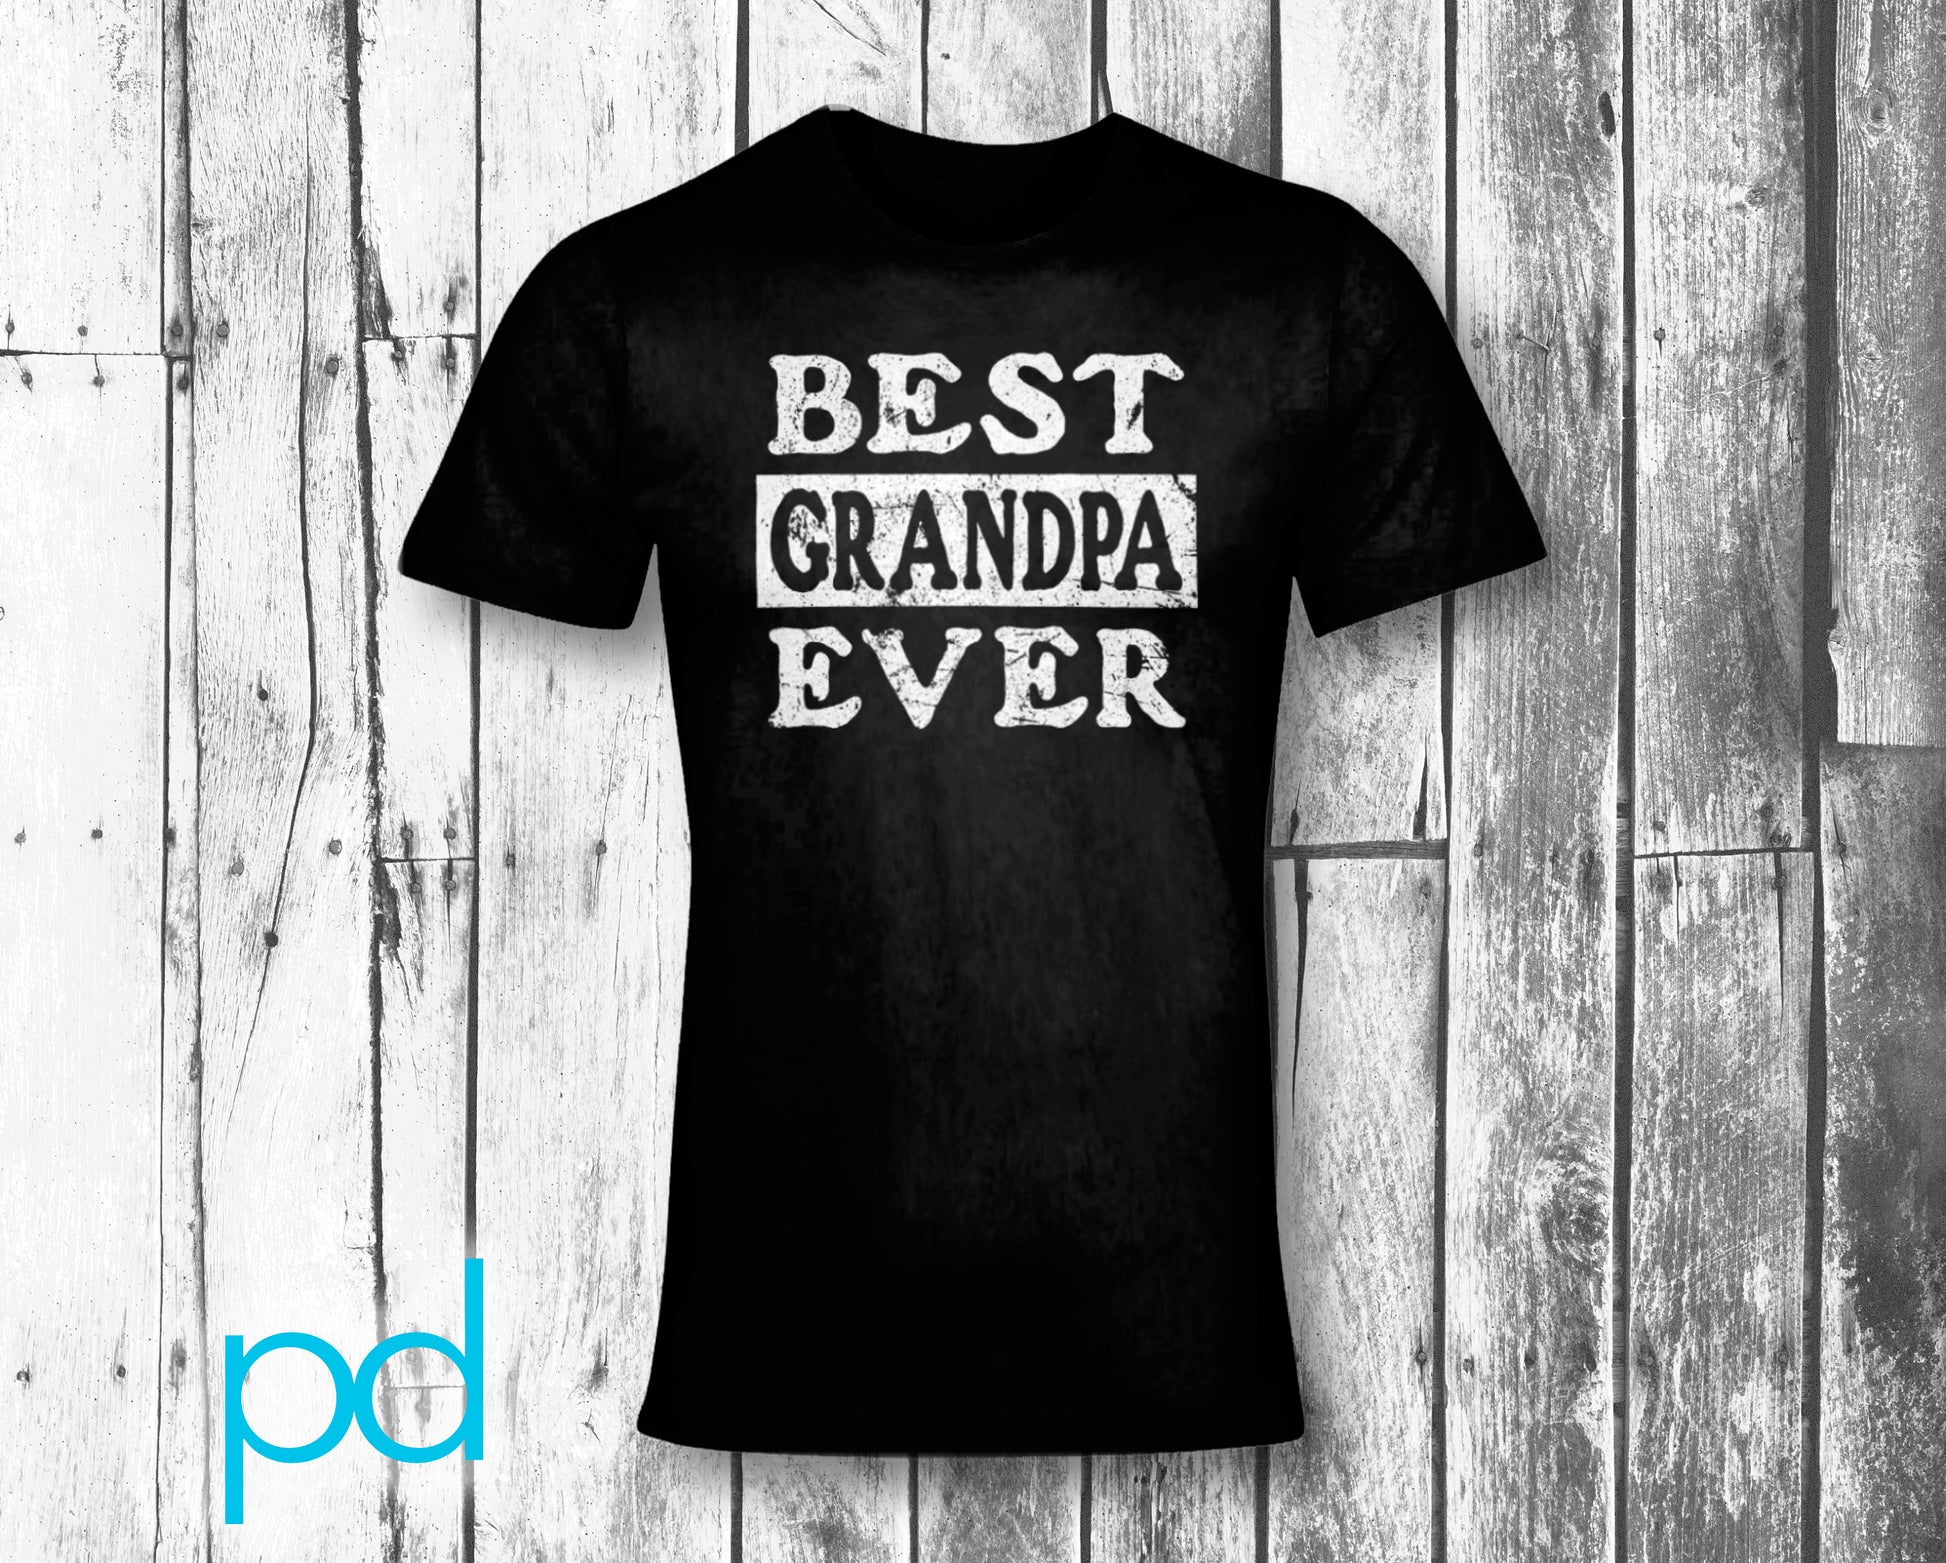 Best Grandpa Ever T-Shirt Unisex Crew Neck Tee Shirt Top